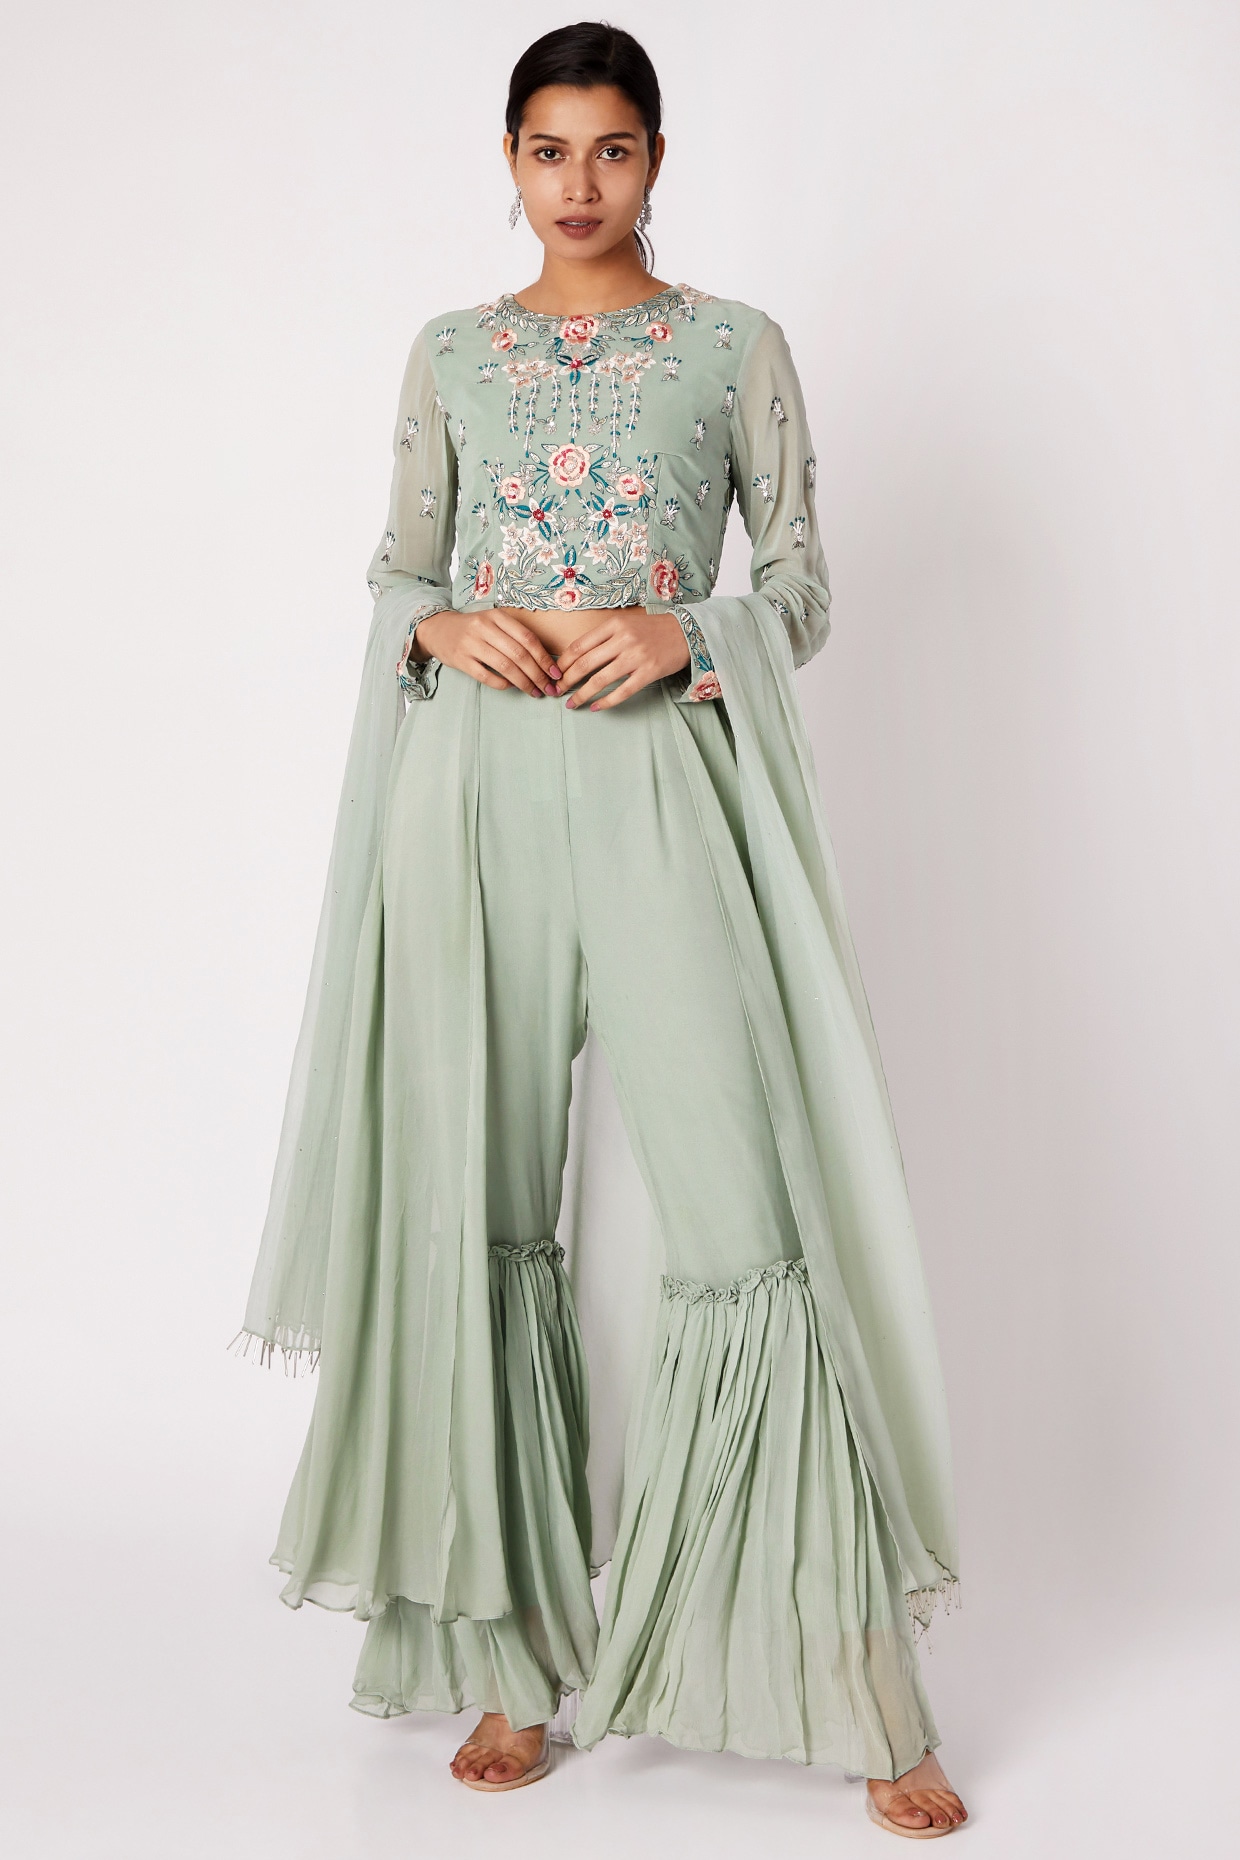 Buy Indian Designer Sharara Suits at 